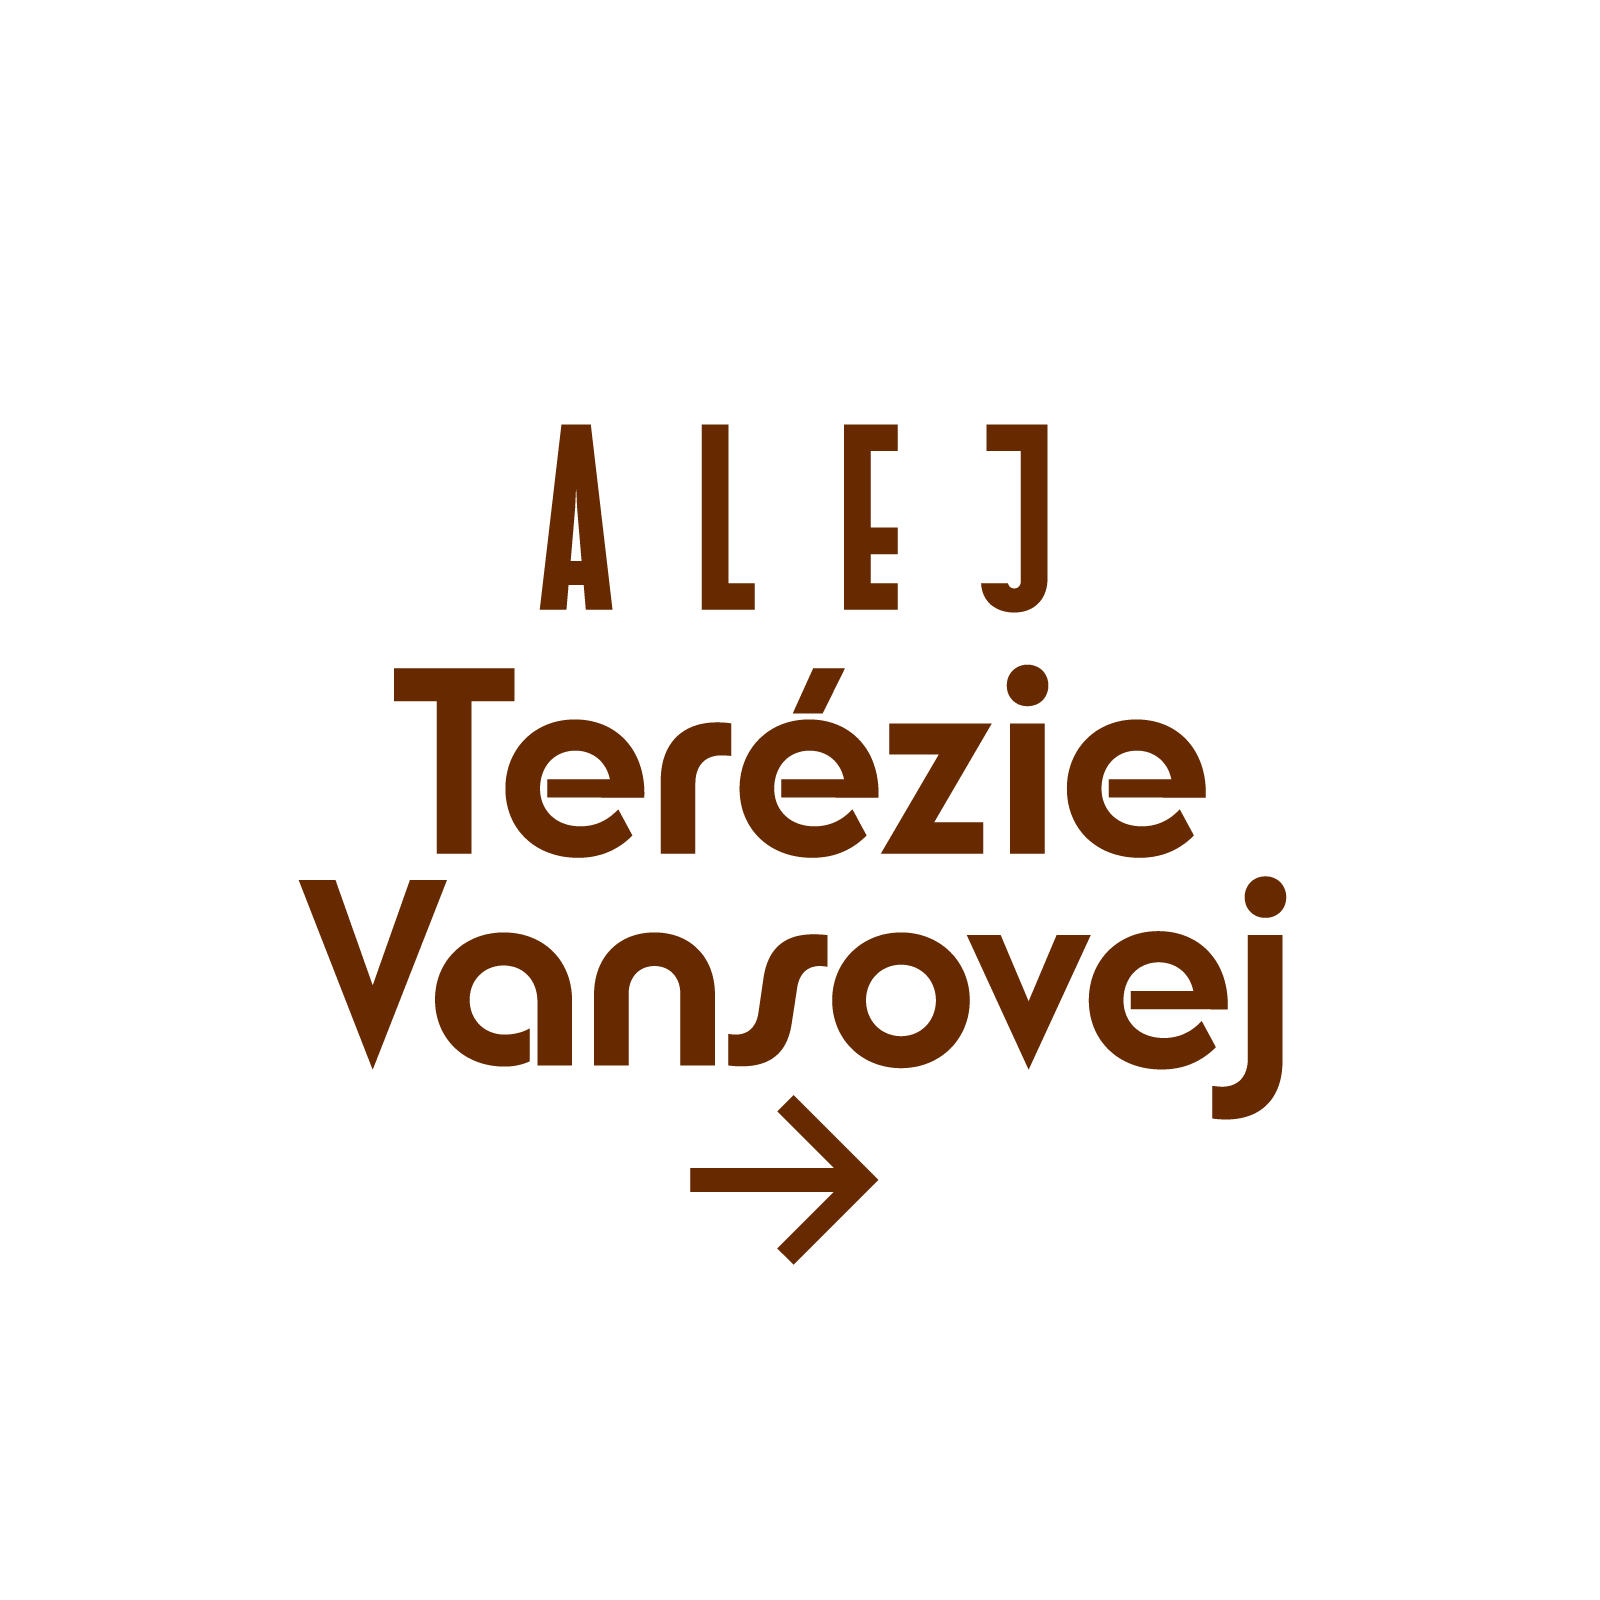 Custom Fonts: Spa Sliač